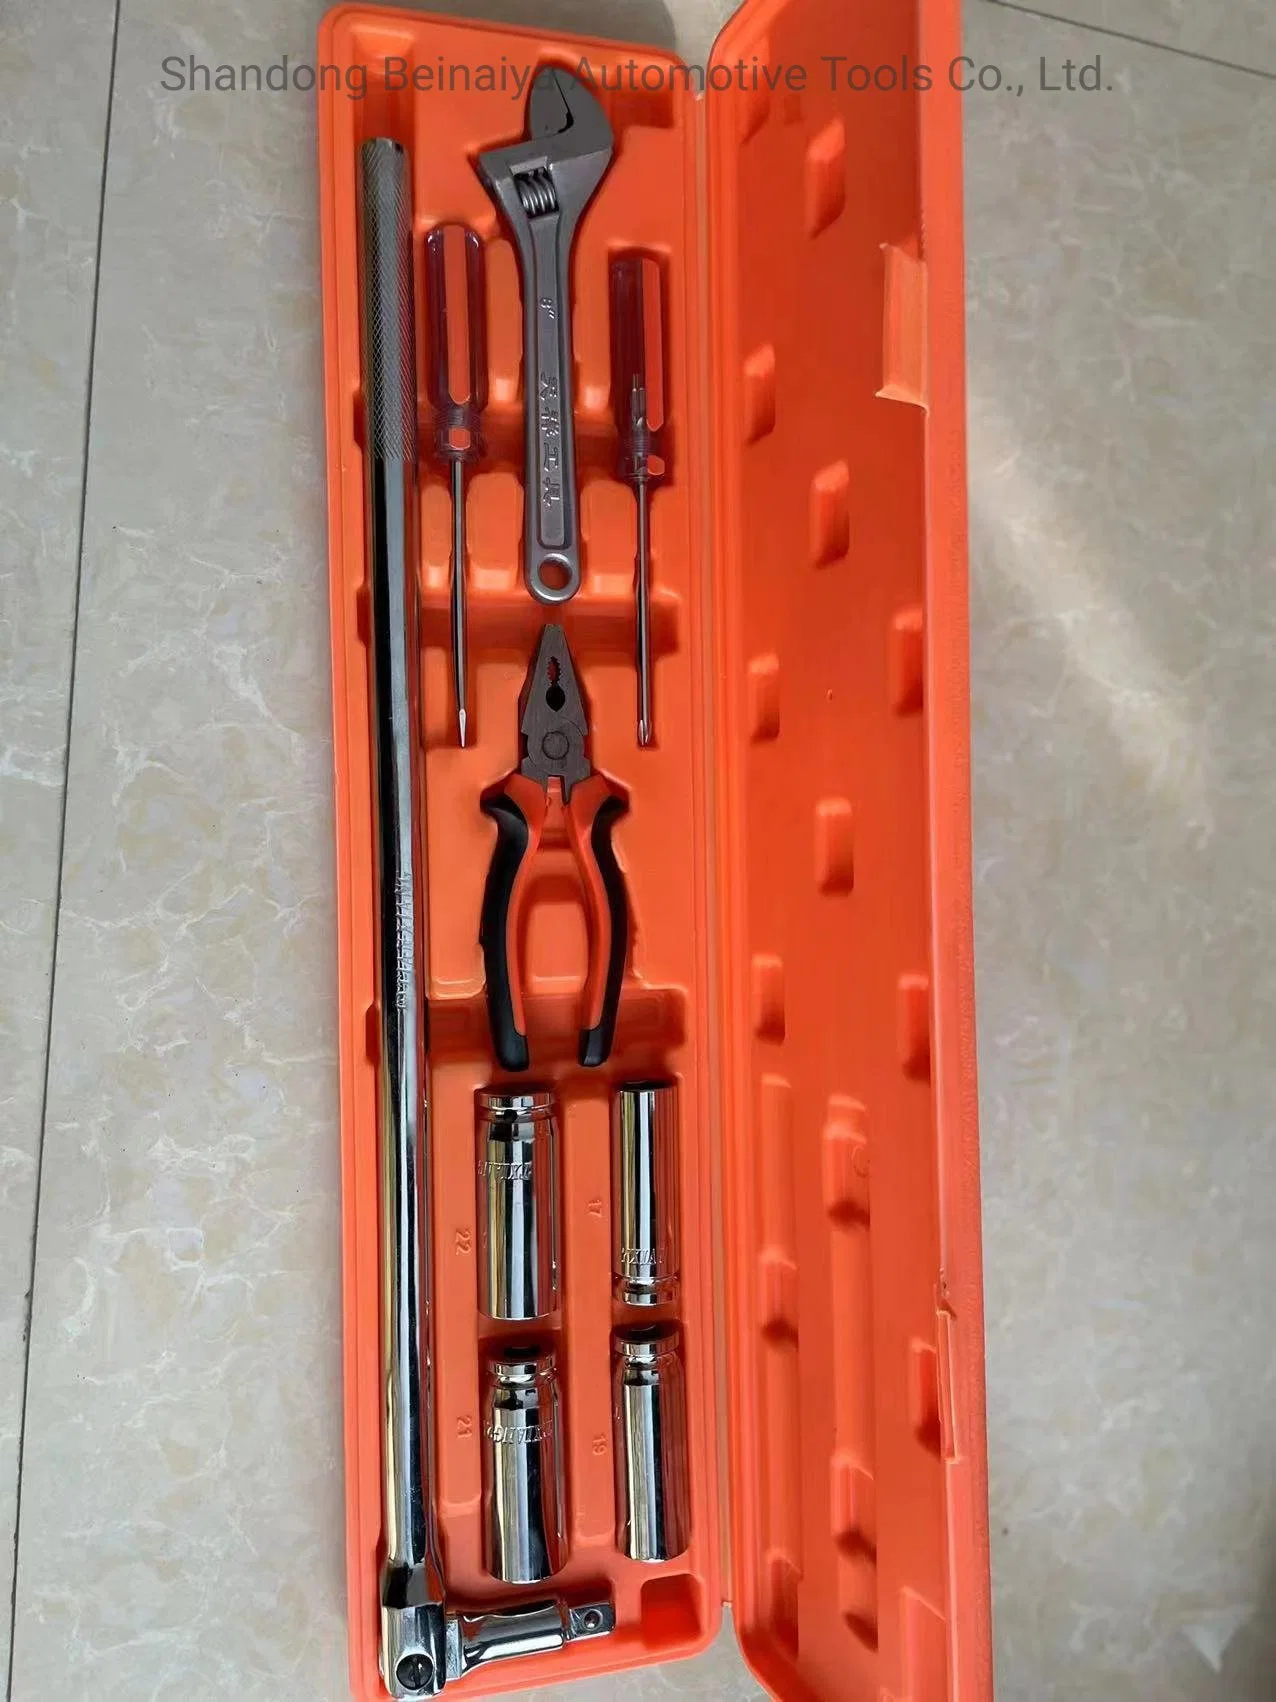 1/2 ′ ′ conjuntos de chaves combinadas de aço cromado de nove peças e chaves de caixa incorporadas com a marca Bny Use para reparar ferramentas automáticas, Home